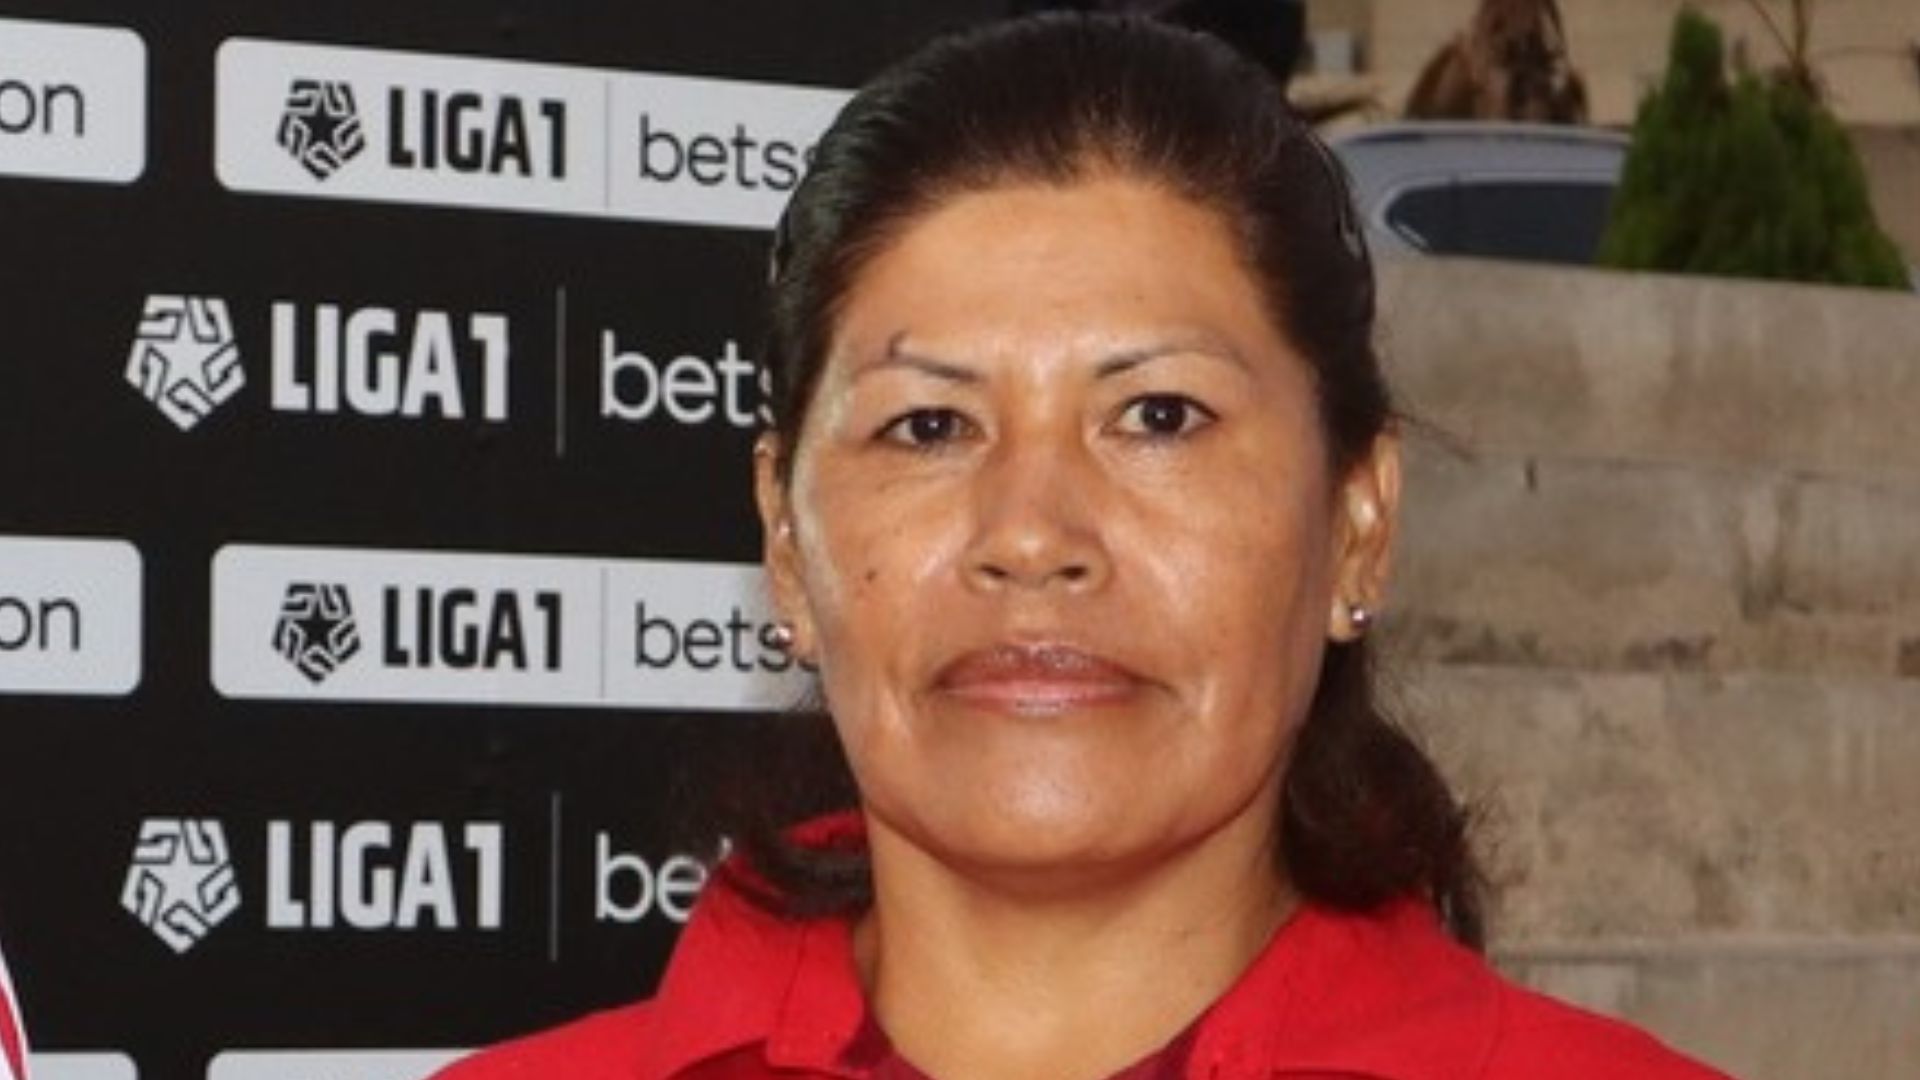 Presidenta de la CONAR confirmó amaños de partidos en el fútbol peruano